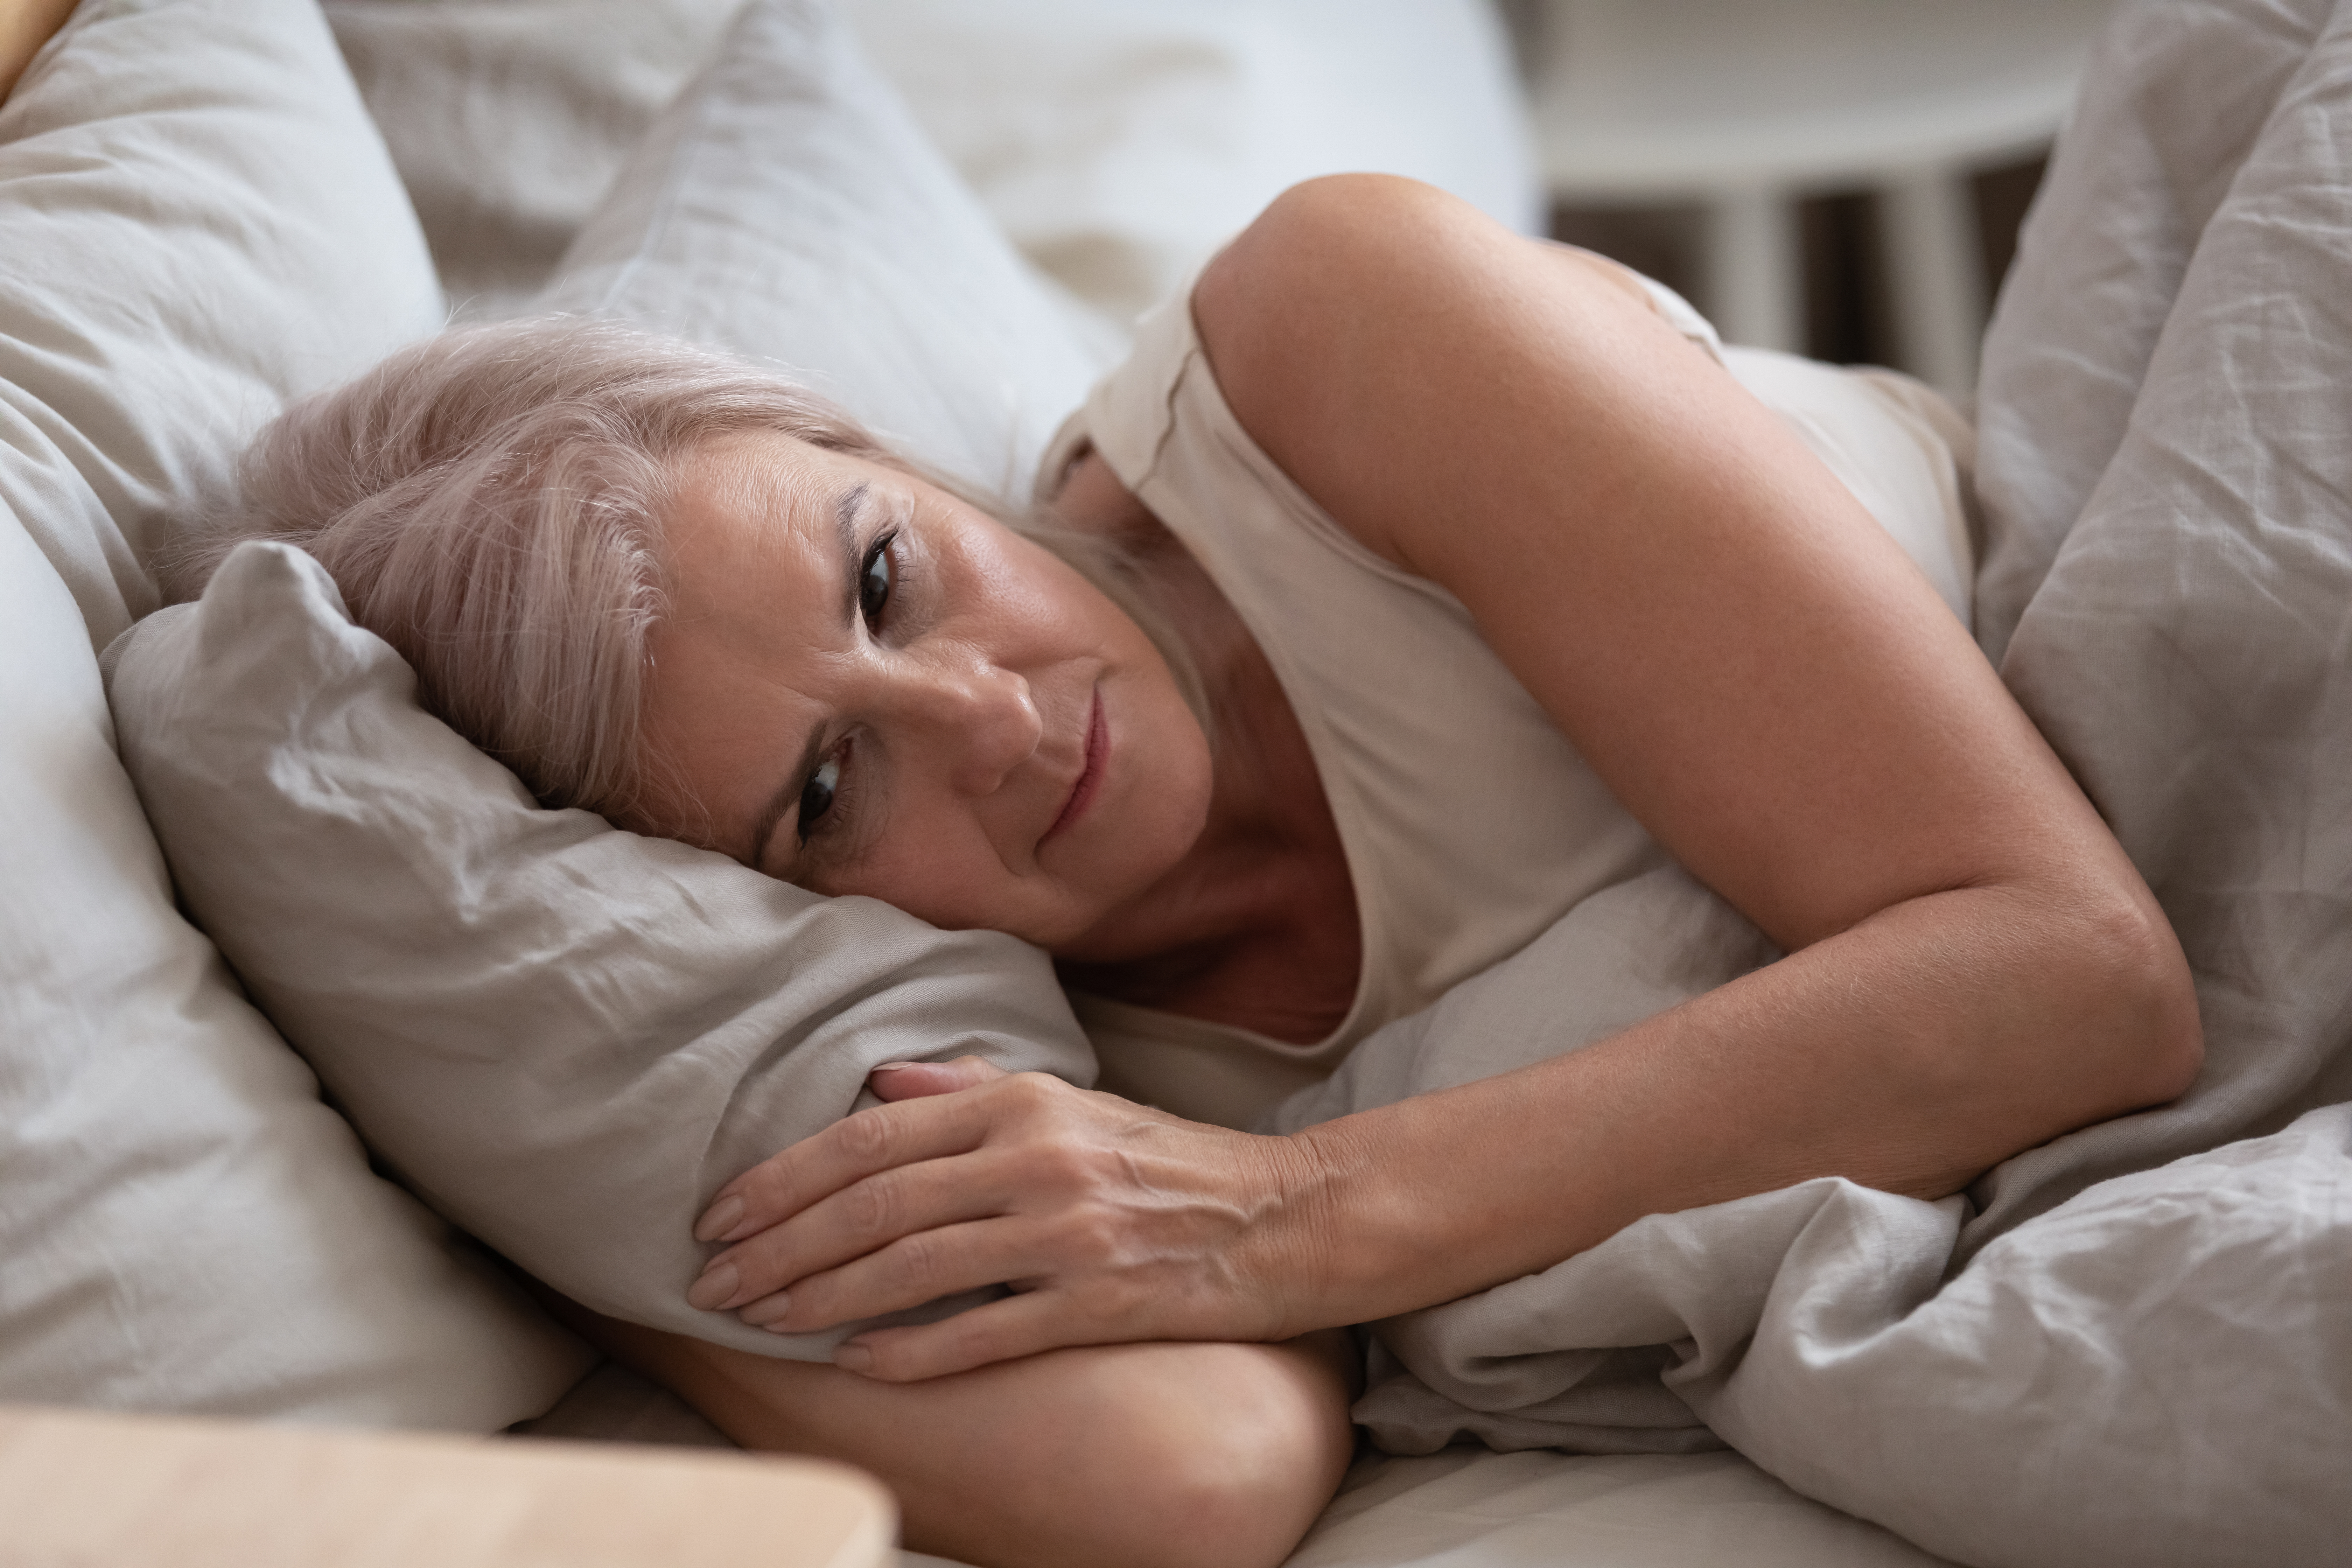 Une femme en proie à de profondes pensées alors qu'elle est allongée dans son lit | Source : Shutterstock